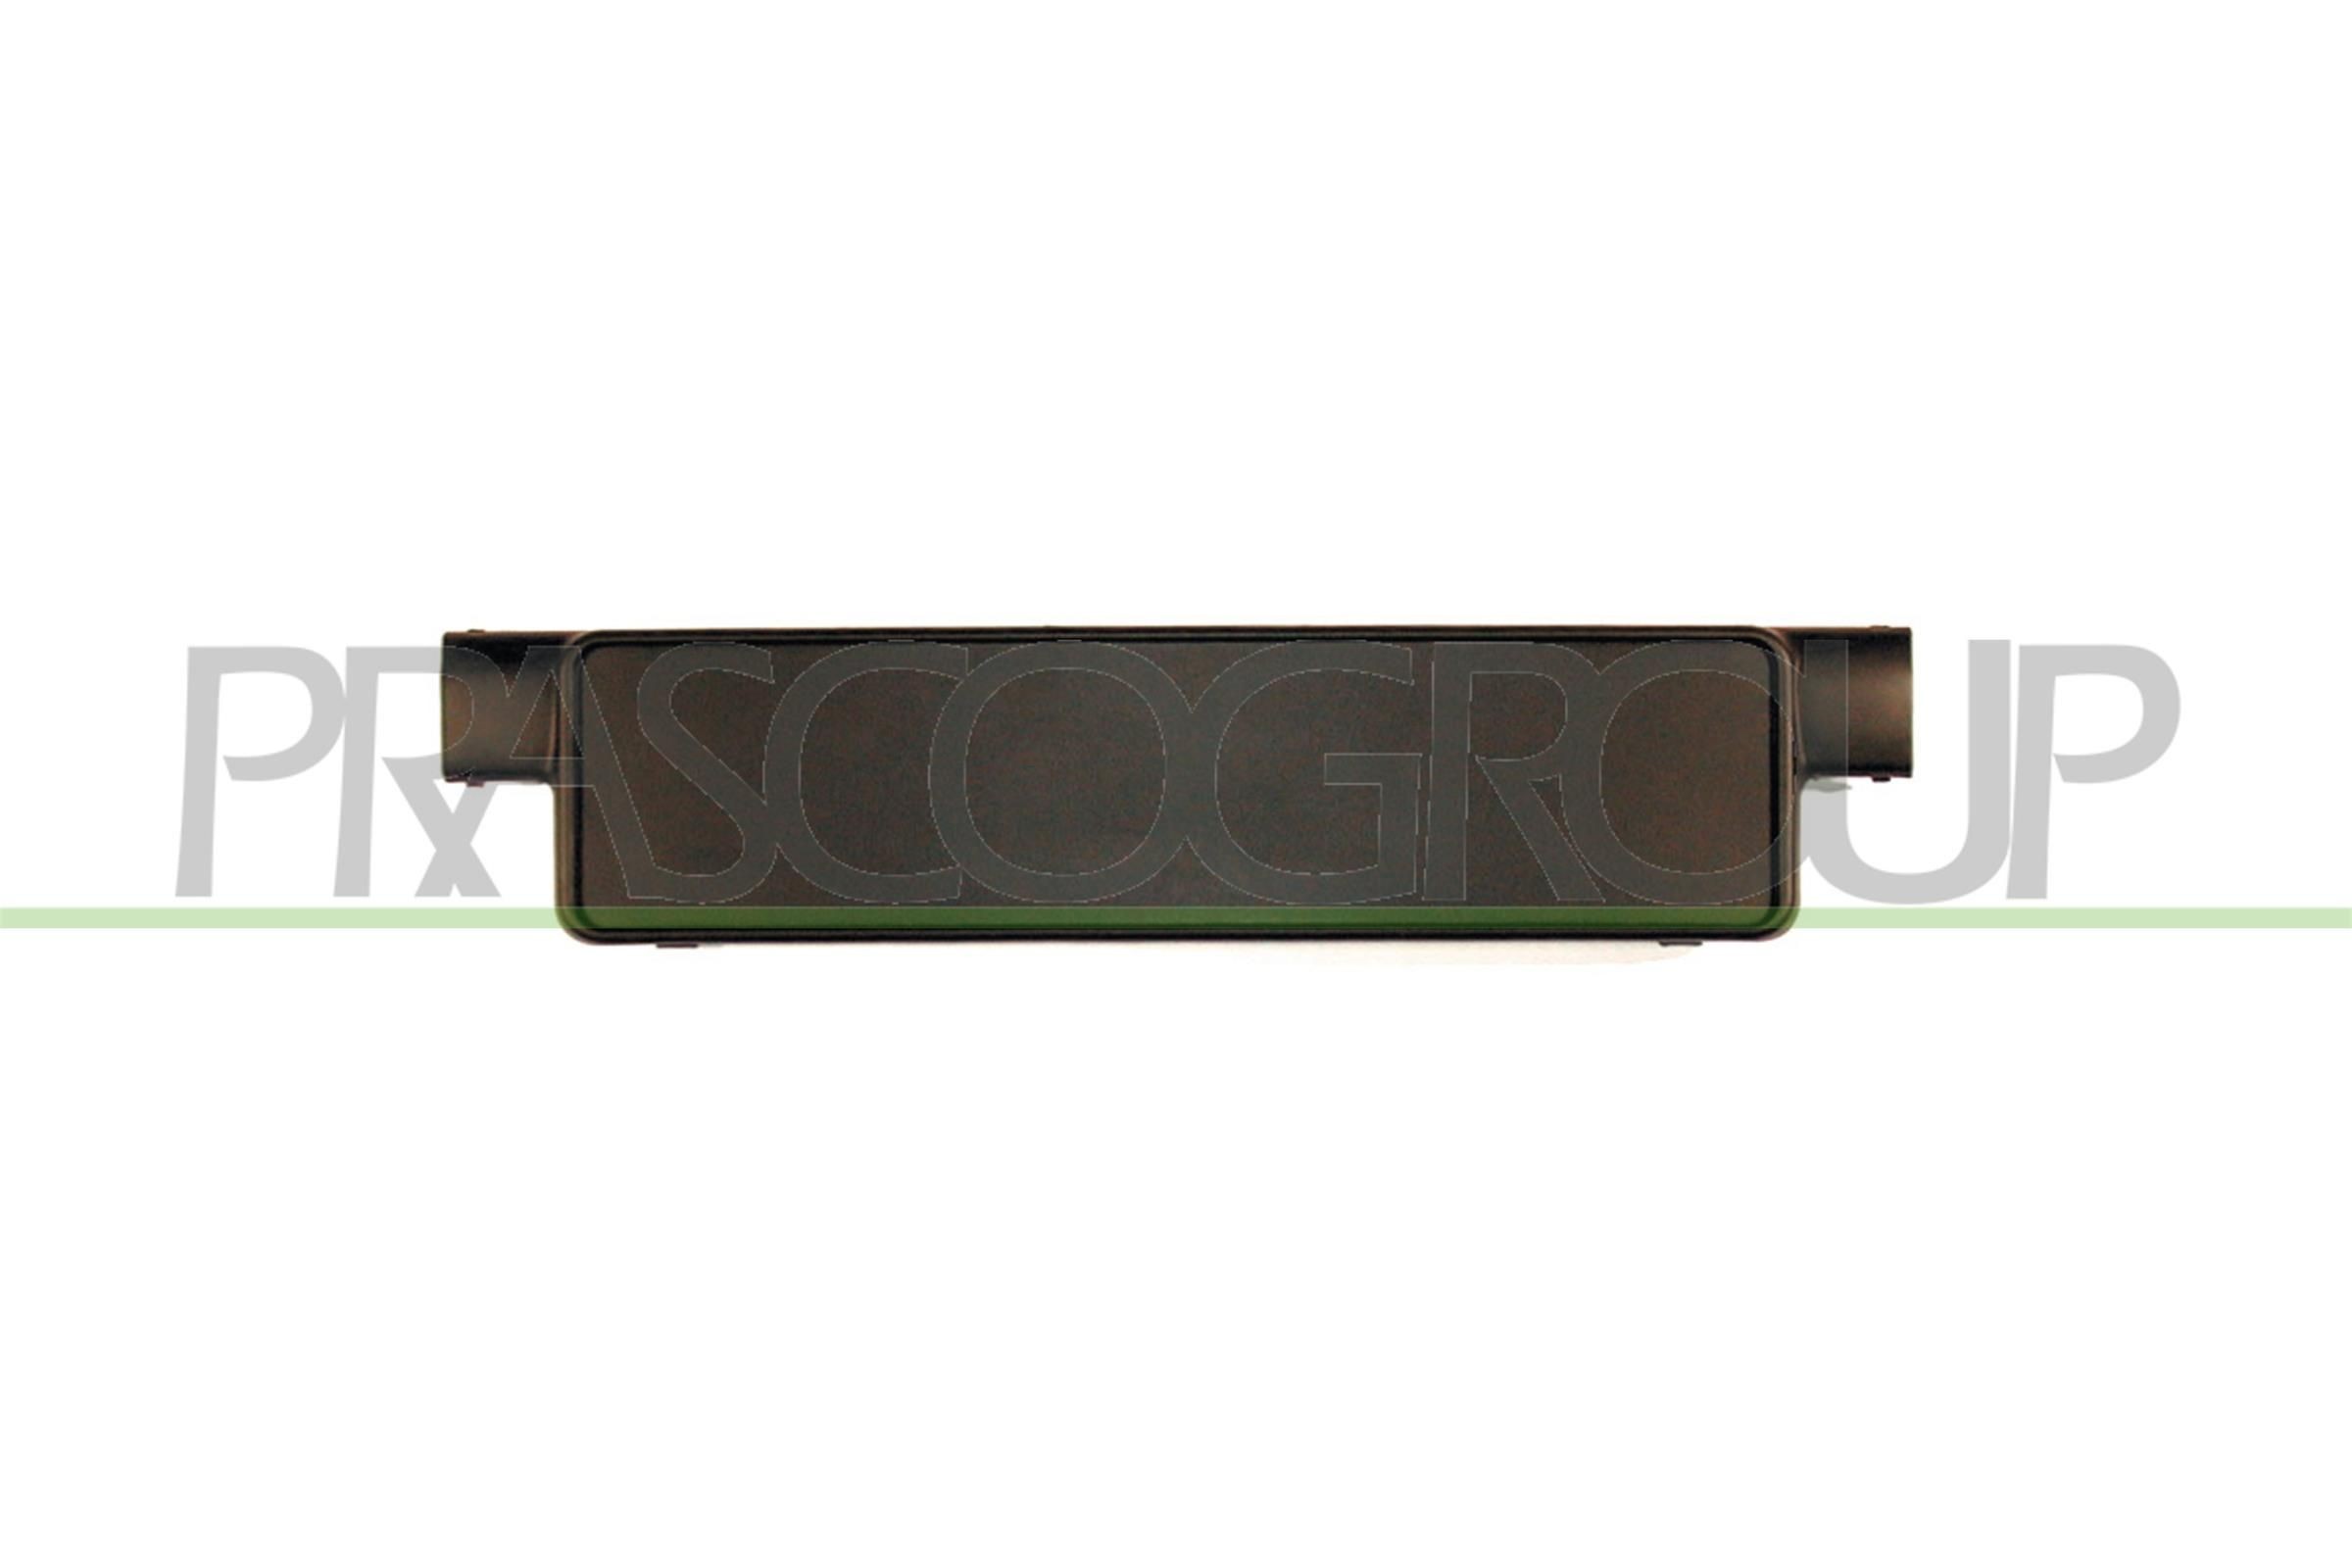 PRASCO Licence plate holder / bracket Passat 3g5 new VG0521539